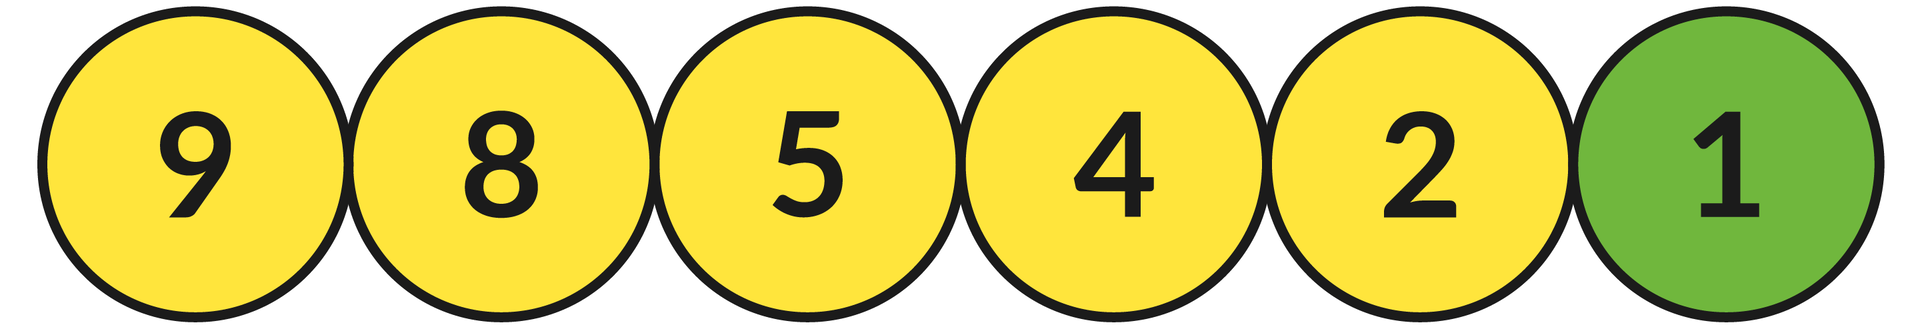 Ilustracja przedstawia sześć okręgów z liczbami: 9, 8, 5, 4, 2, 1.  Zielonym kolorem zaznaczono okrąg z liczbą: 1, a kolorem żółtym z liczbami: 9, 8, 5, 3, 2.